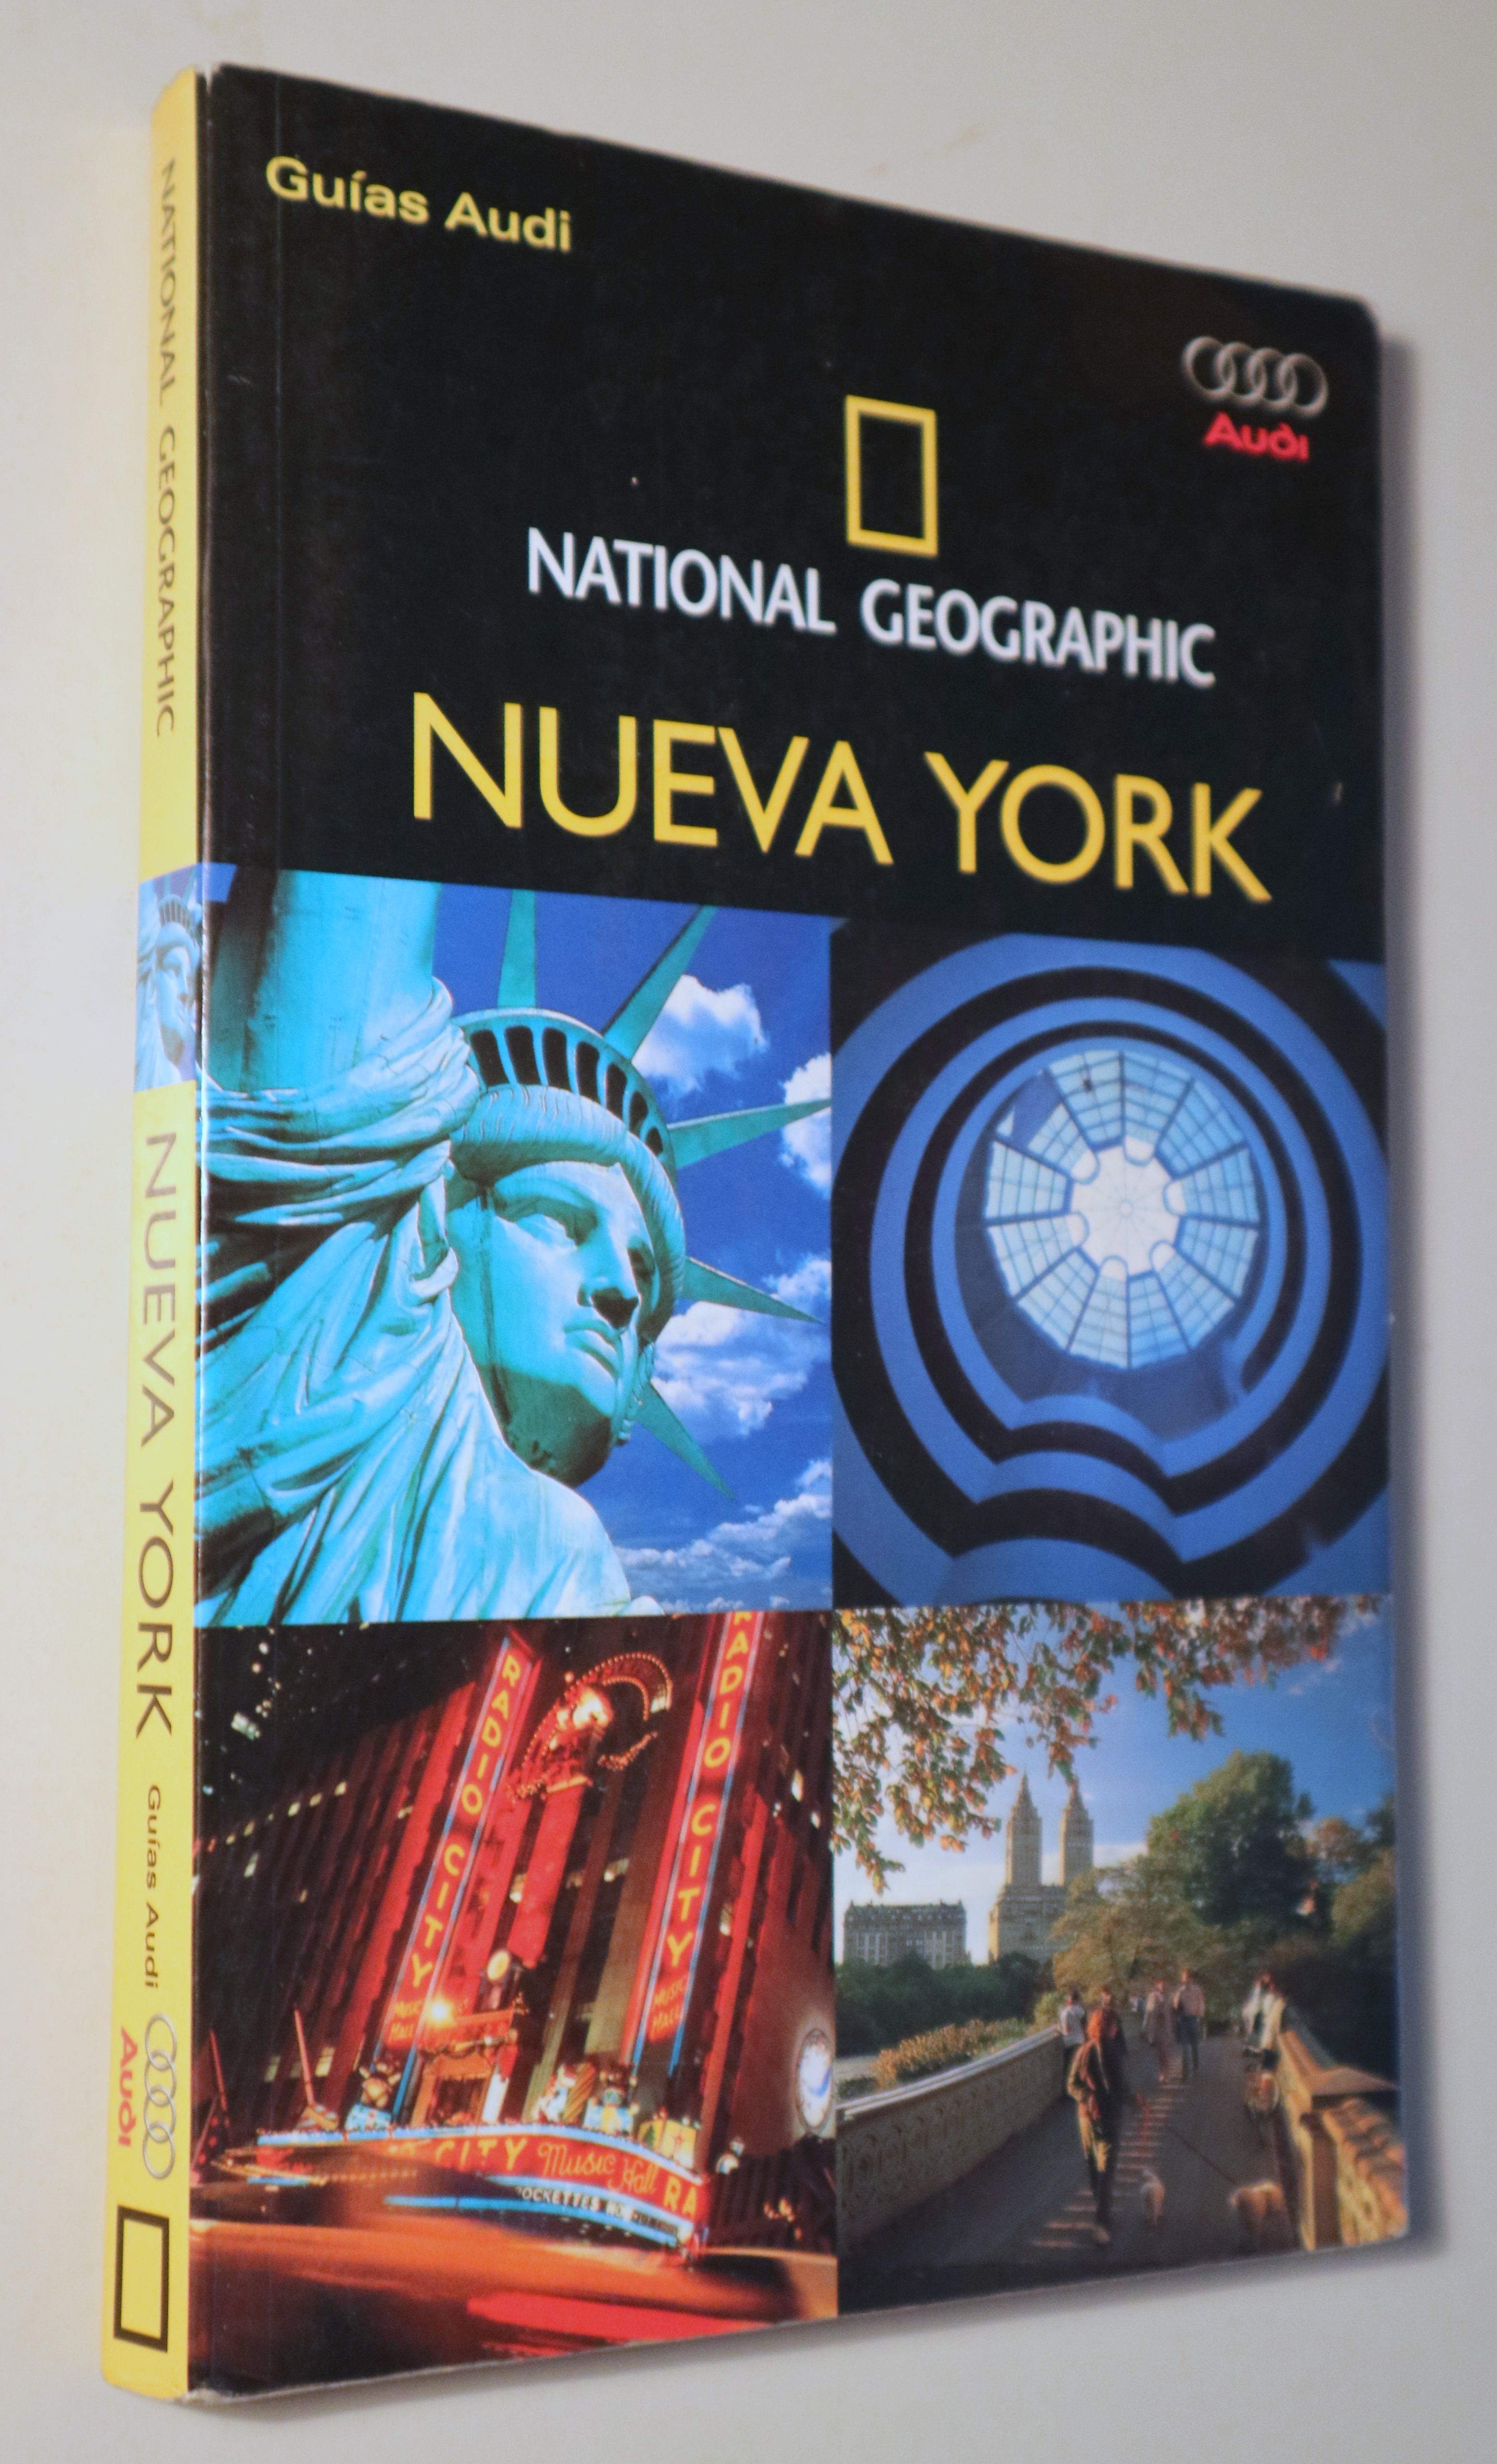 NUEVA YORK. National Geographic. Guías Audi - Barcelona 2004 - Muy ilustrado